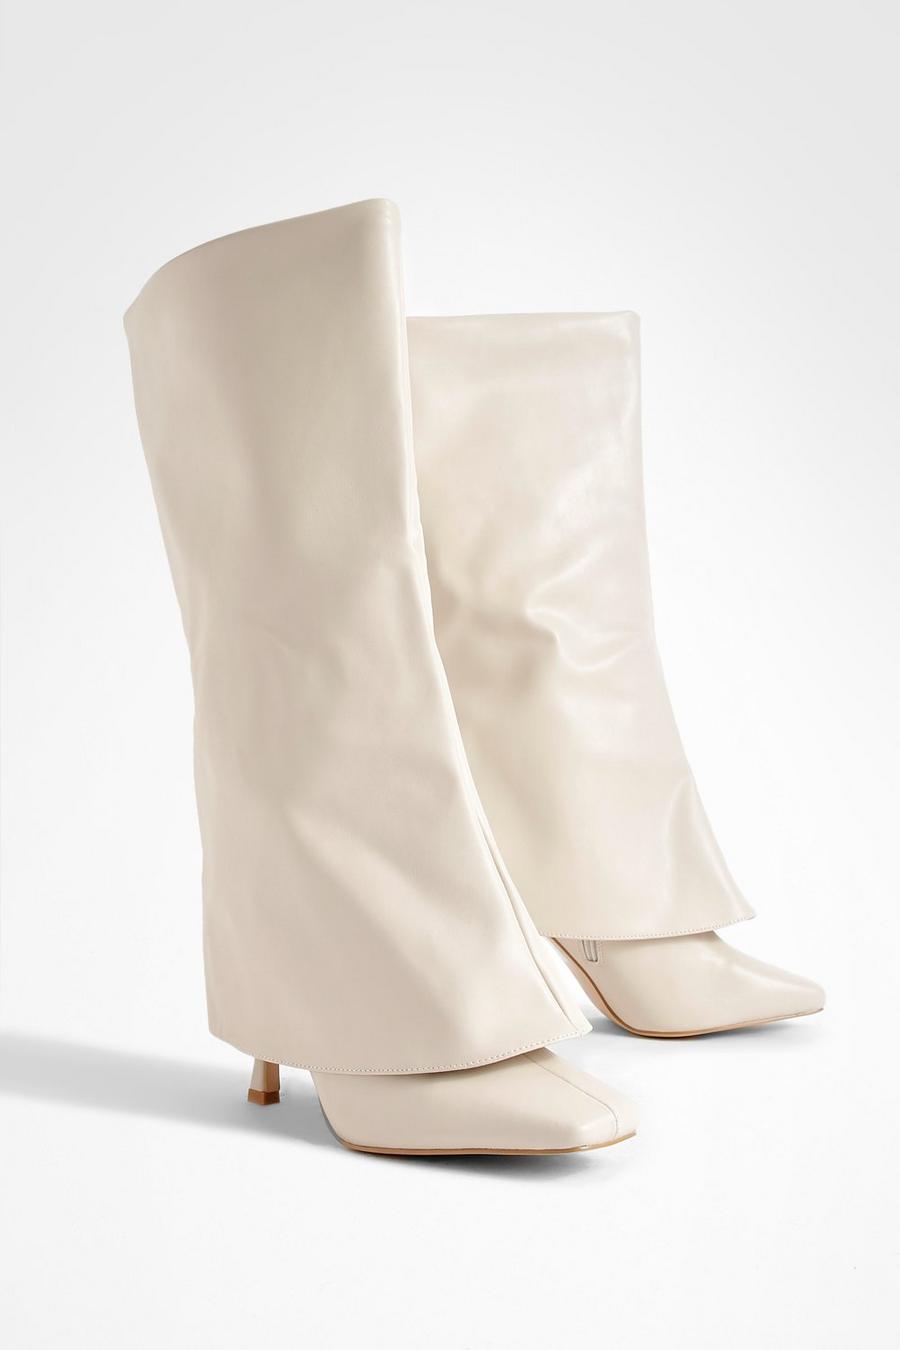 Cream Wide Width Square Toe Foldover Boots